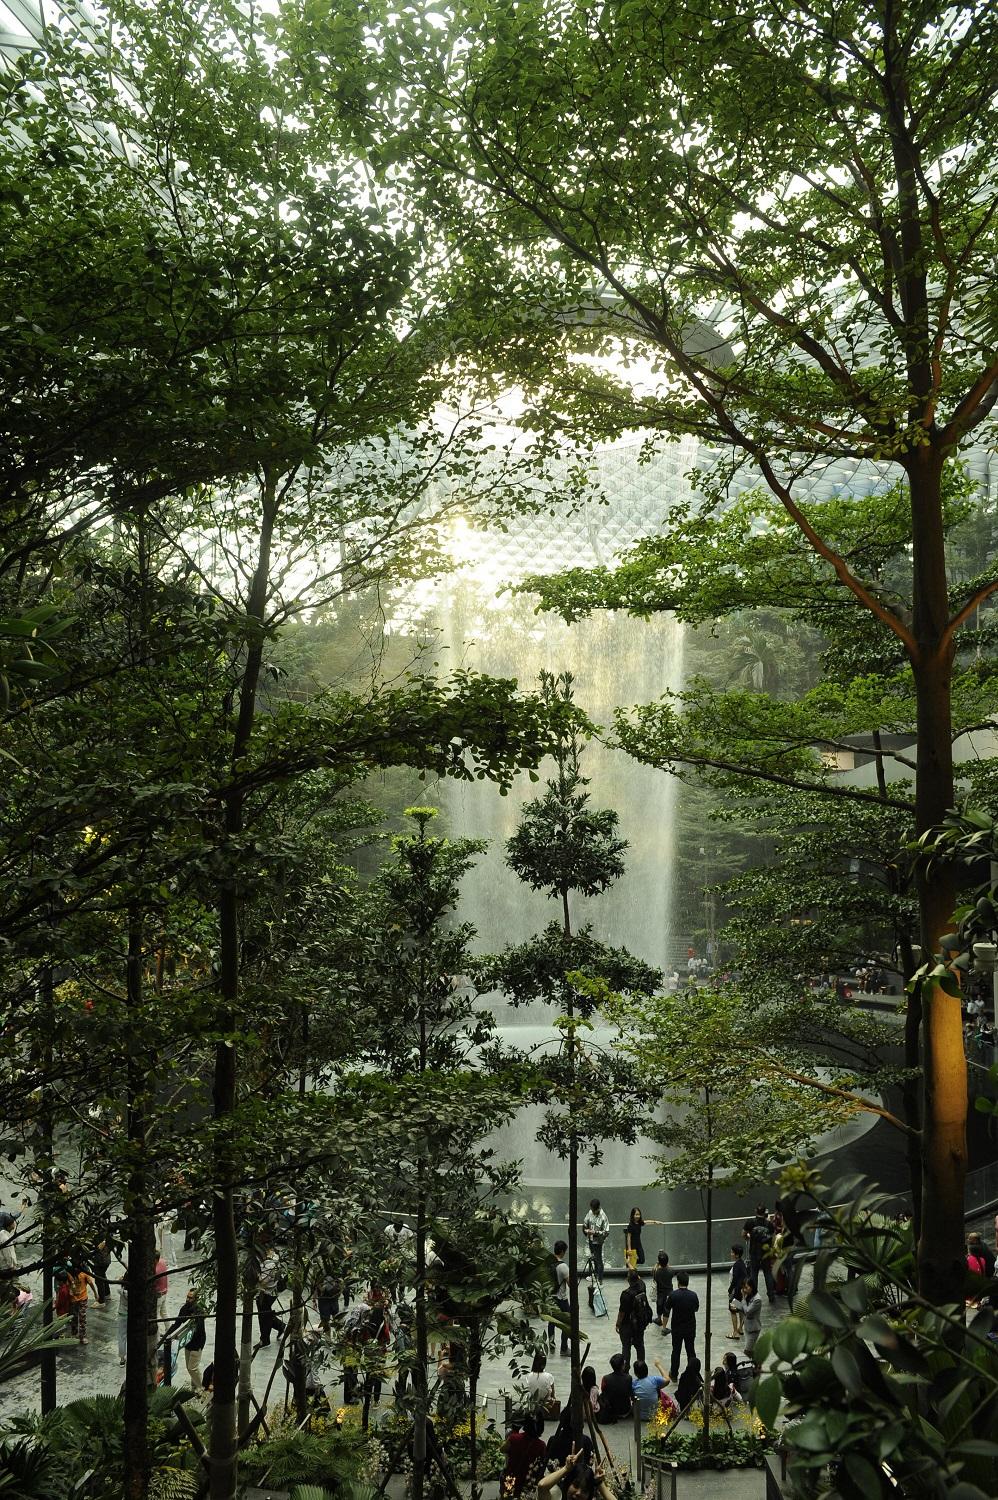 singapour de jardins suspendus en quartiers atypiques nos incontournables dans la cite etat